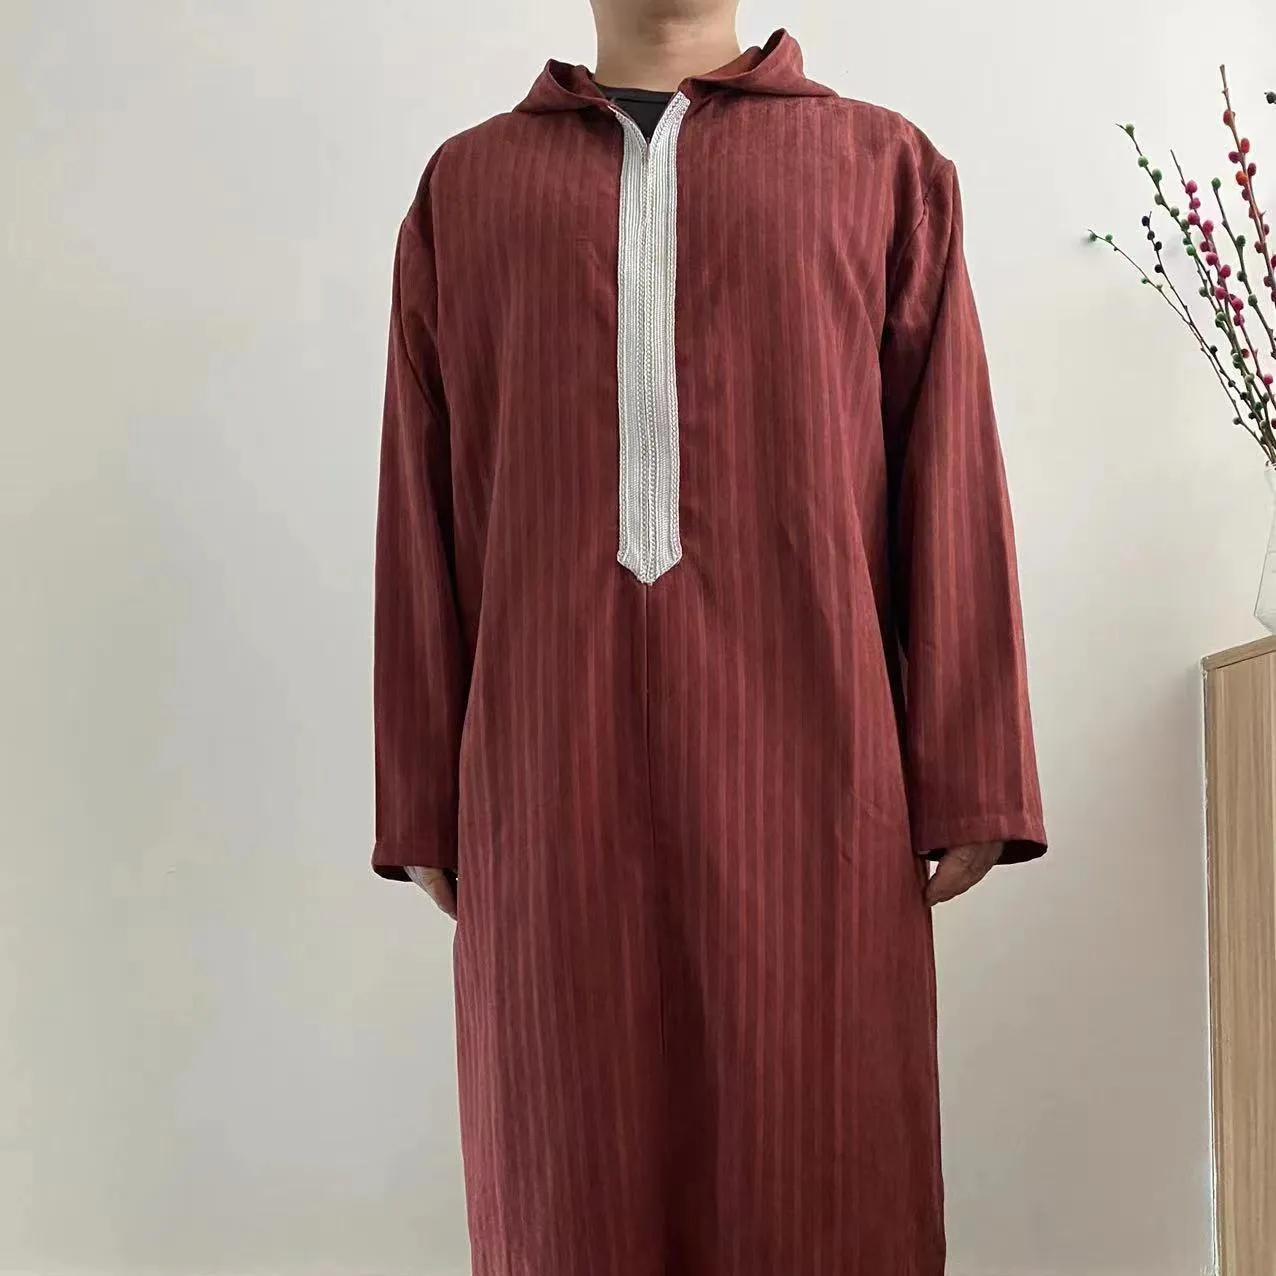 R-1 традиционная мусульманская одежда, исламский халат Abaya Dubai, исламский мужчина, арабия, Саудовский марокканский кафтан, таби для мужчин